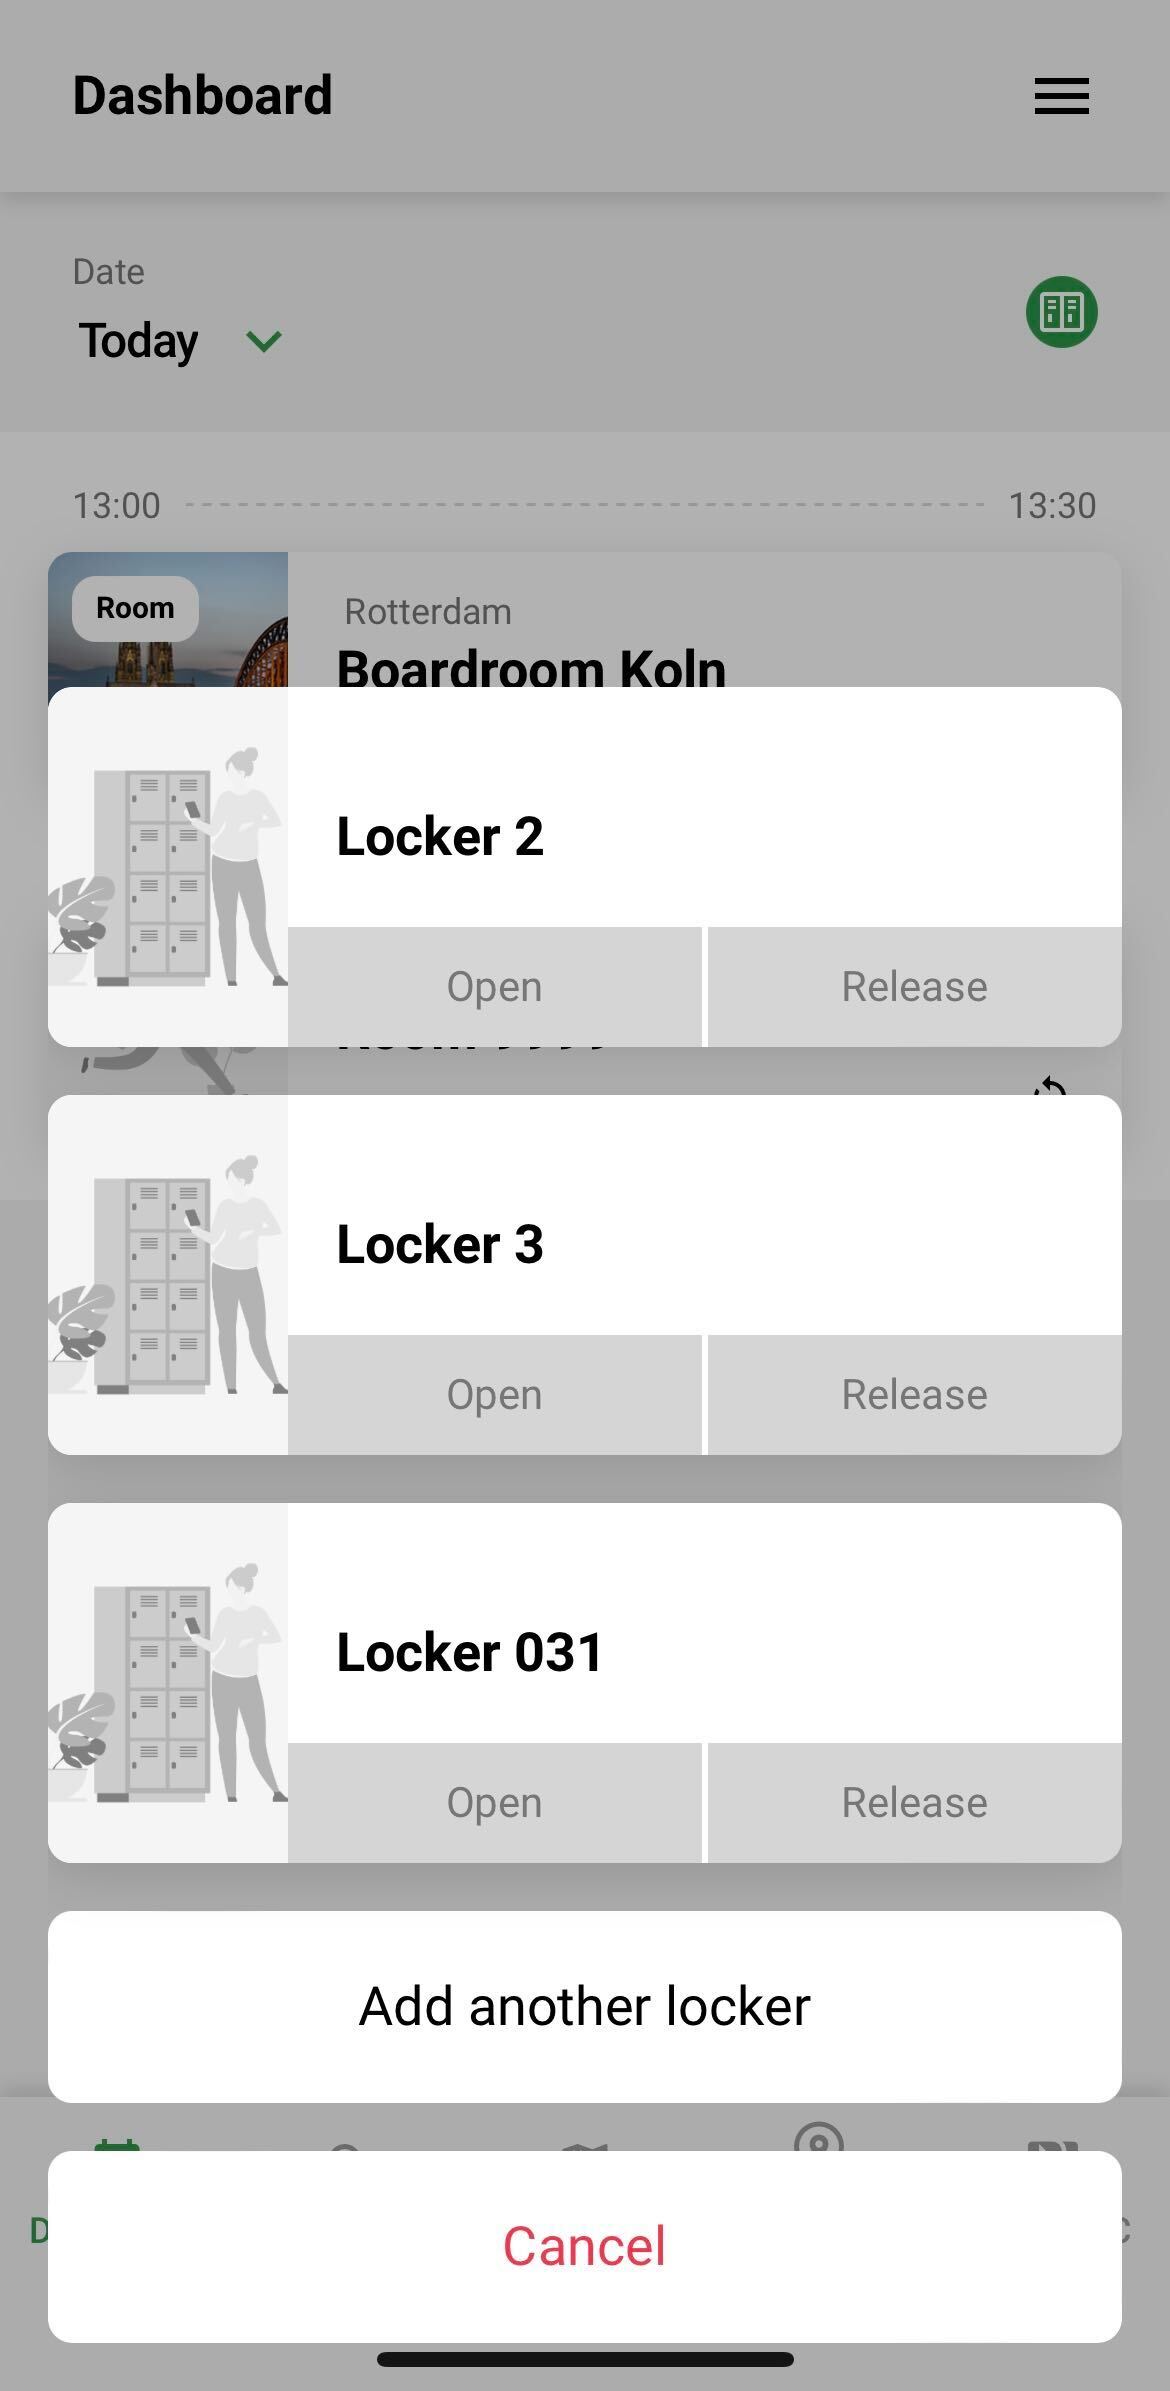 open_of_release_locker.jpg